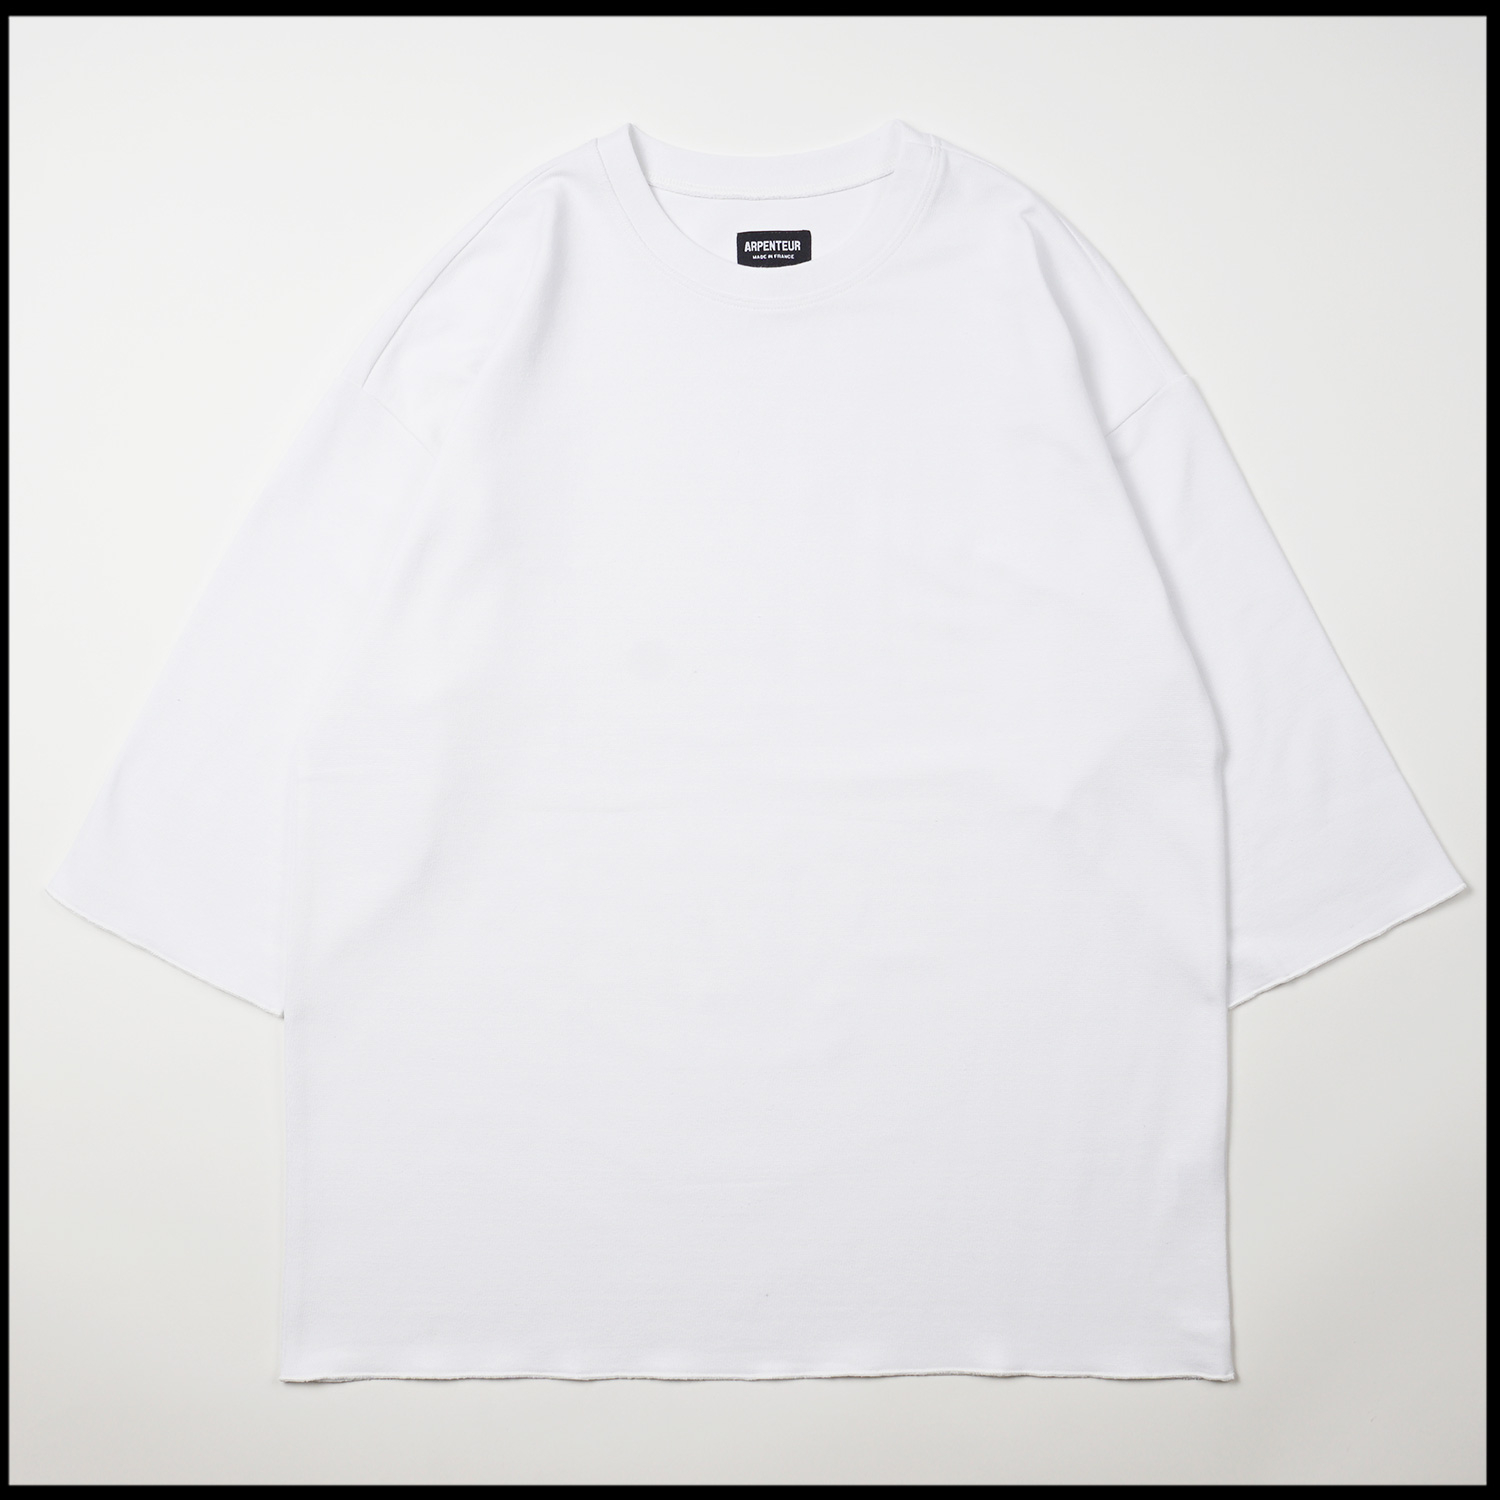 Marinière t-shirt in White color by Arpenteur